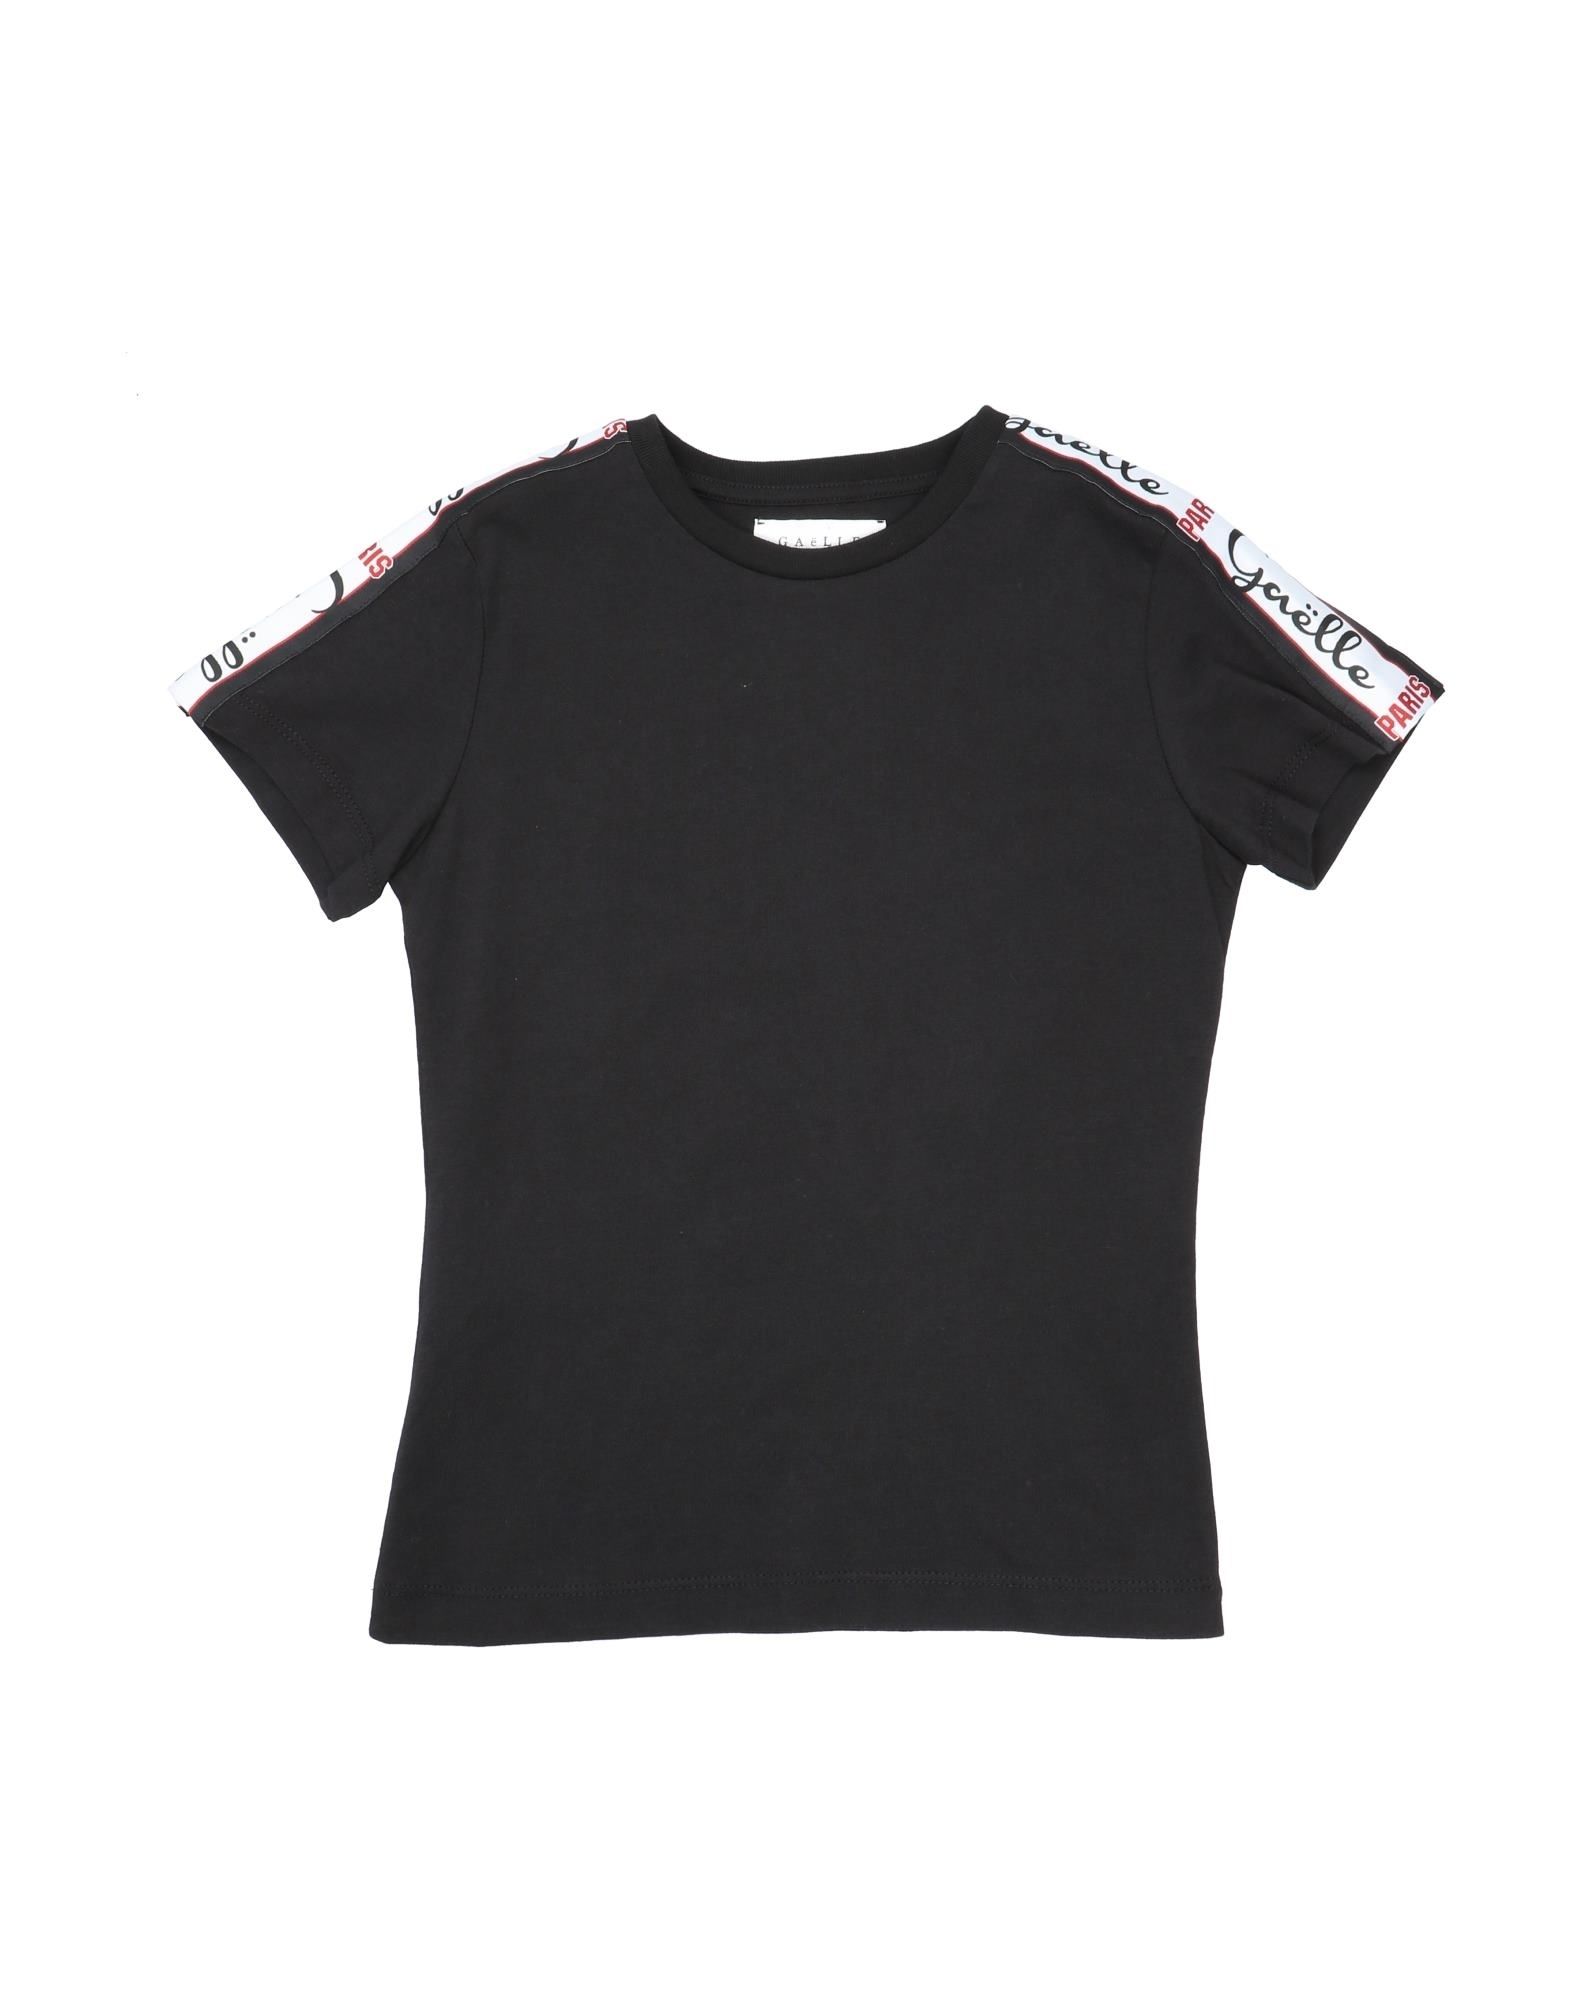 Shop Gaelle Paris Gaëlle Paris Toddler Girl T-shirt Black Size 6 Cotton